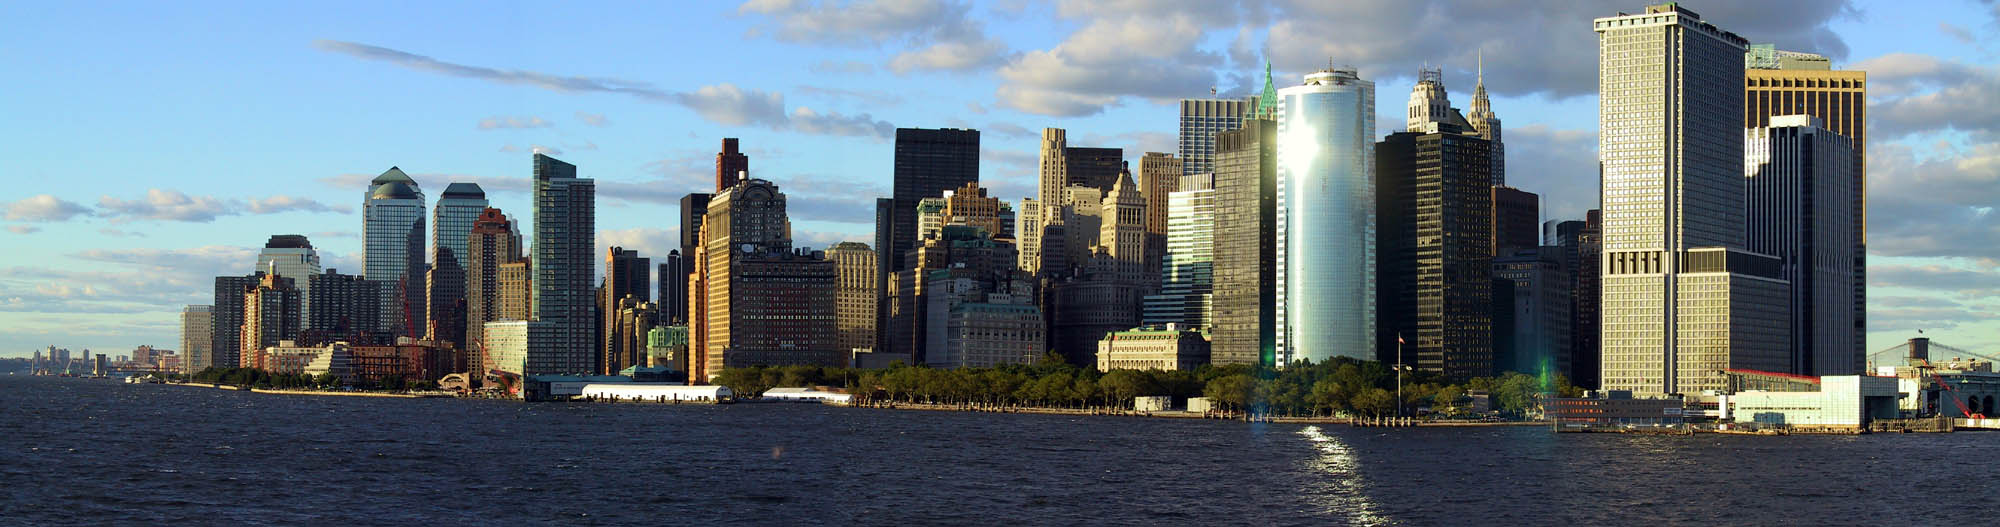 NYC 2002: Manhattan Panoramic